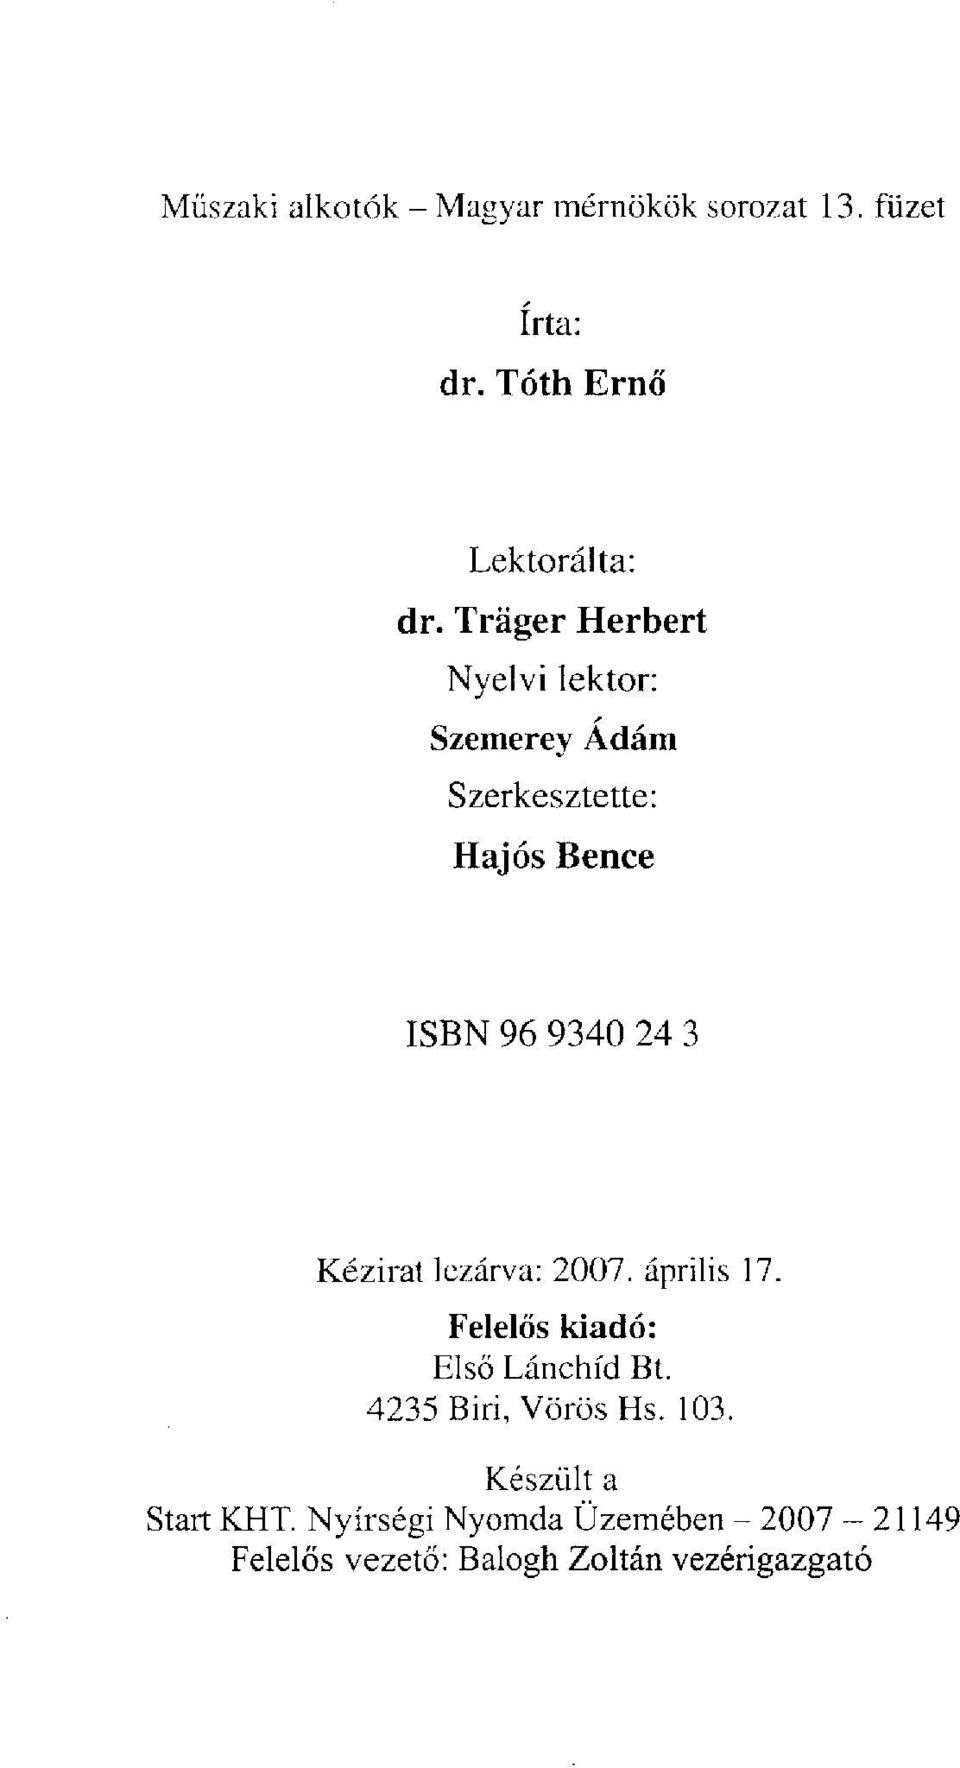 Kézirat lezárva: 2007. április 17. Felelős kiadó: Első Lánchíd Bt. 4235 Biri, Vörös Hs. 103.